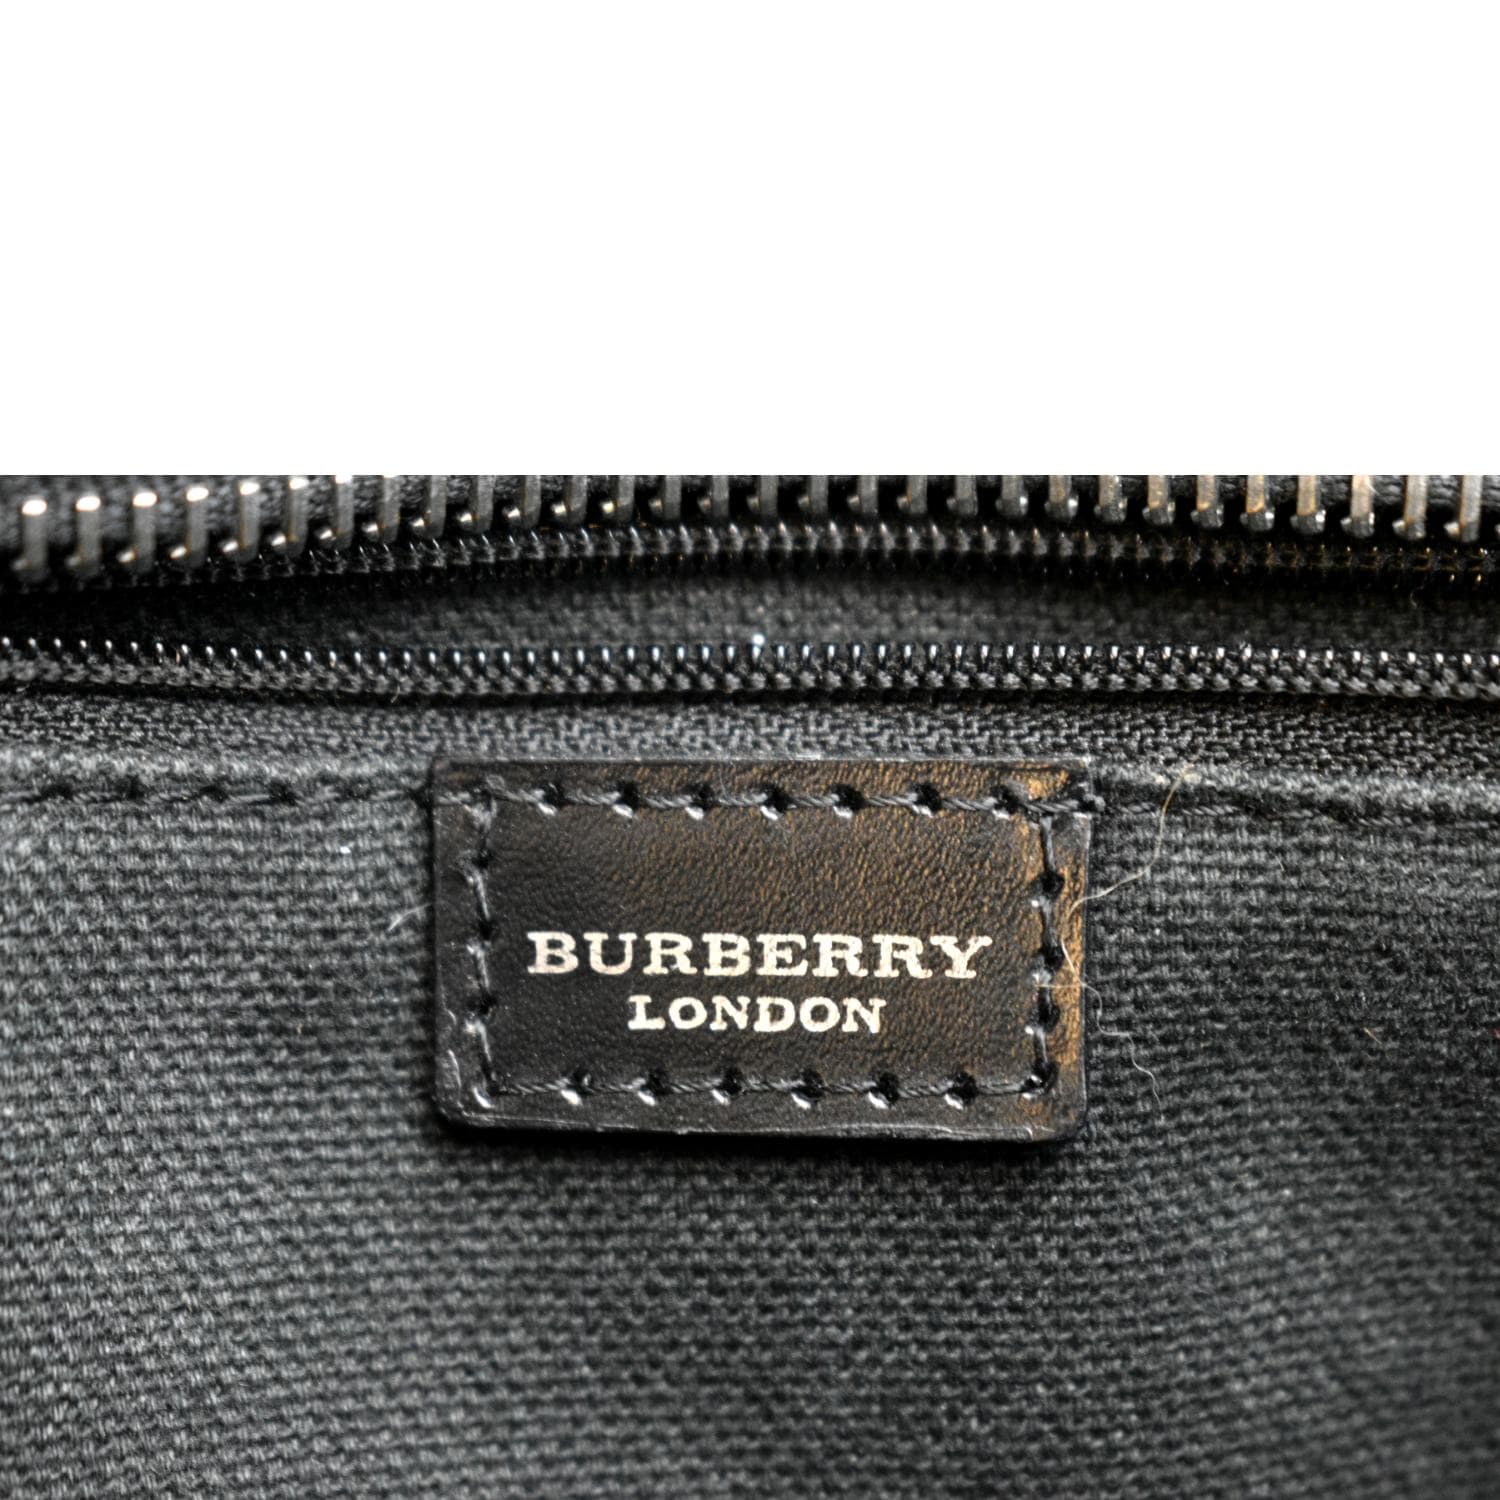 GENUINE BURBERRY check Plaid Shoulder bag handbag smaller - rigid black  straps!